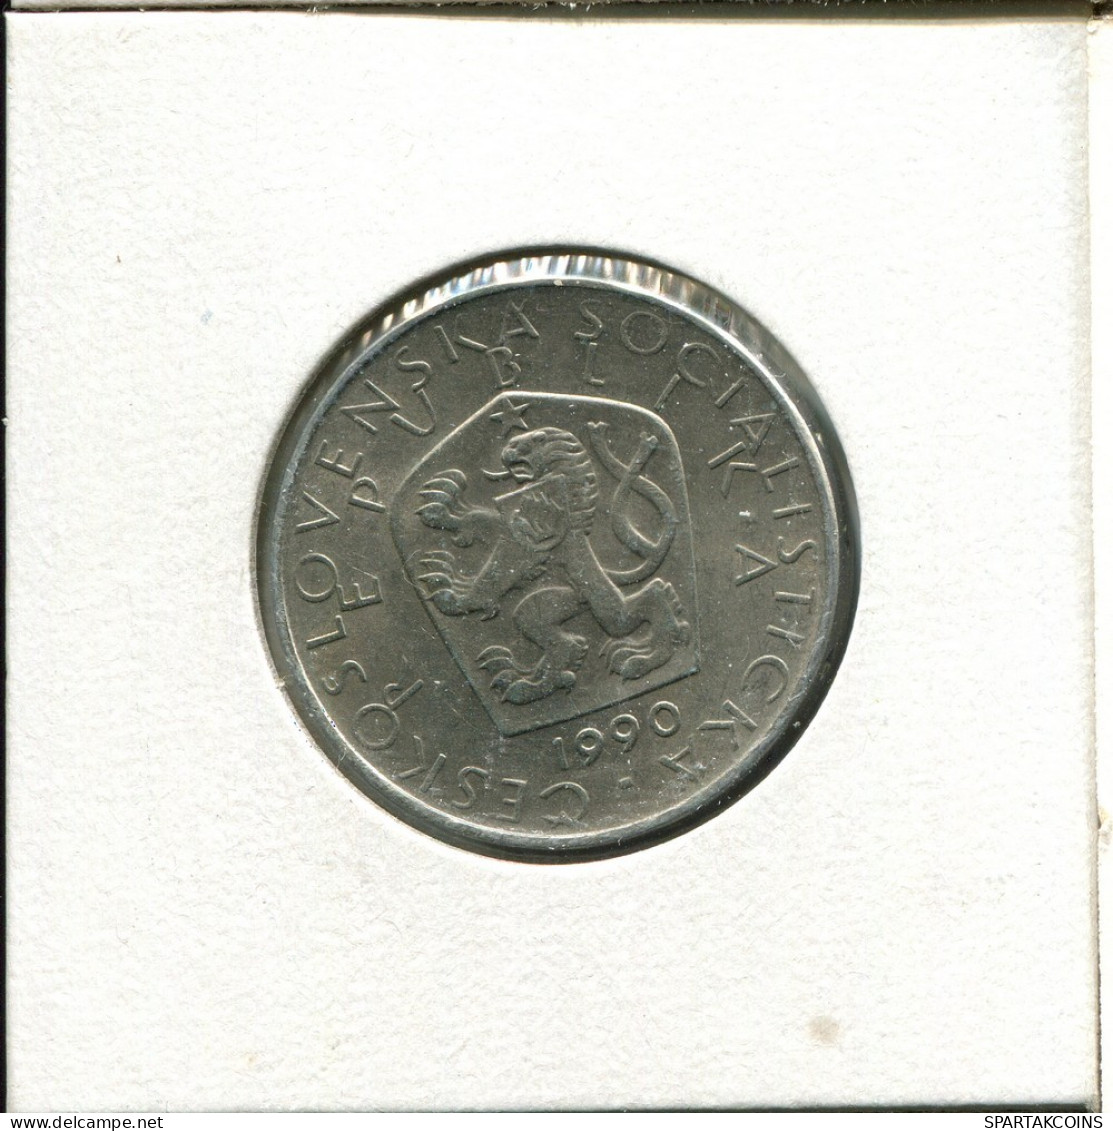 5 KORUN 1990 CHECOSLOVAQUIA CZECHOESLOVAQUIA SLOVAKIA Moneda #AS994.E.A - Checoslovaquia